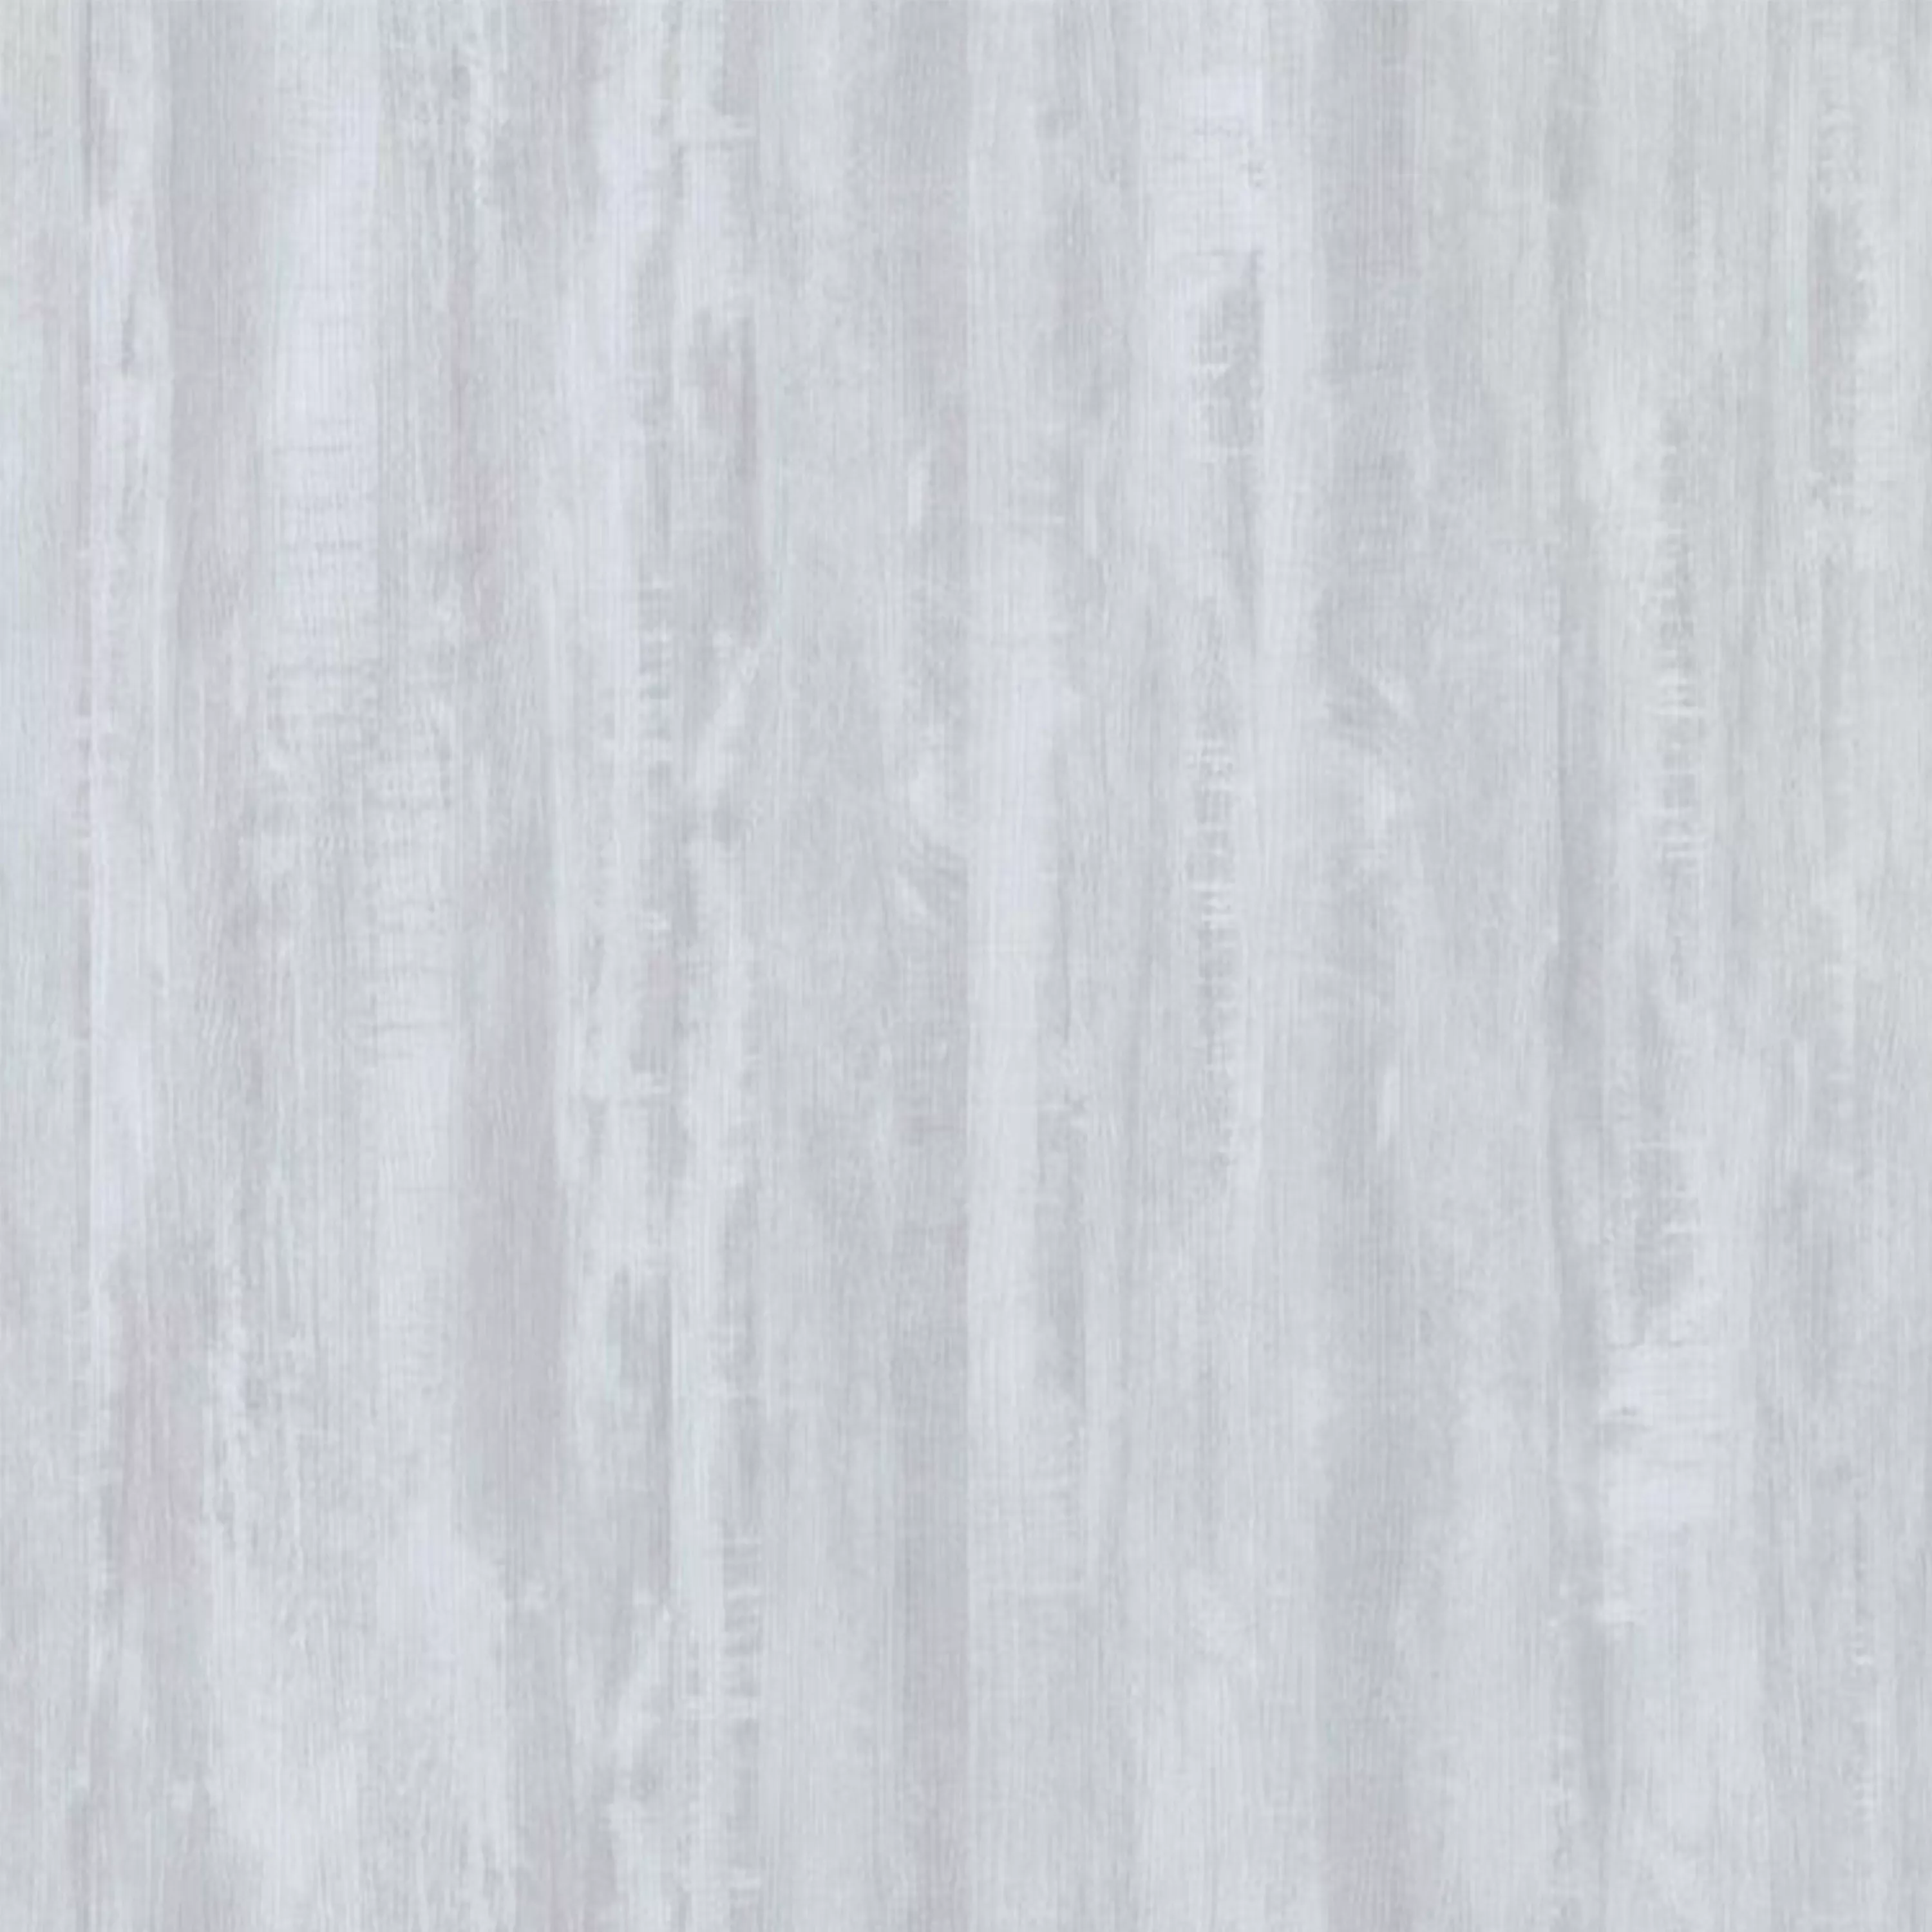 Δάπεδο Από Bινύλιο Σύστημα Κλικ Snowwood Ασπρο 17,2x121cm